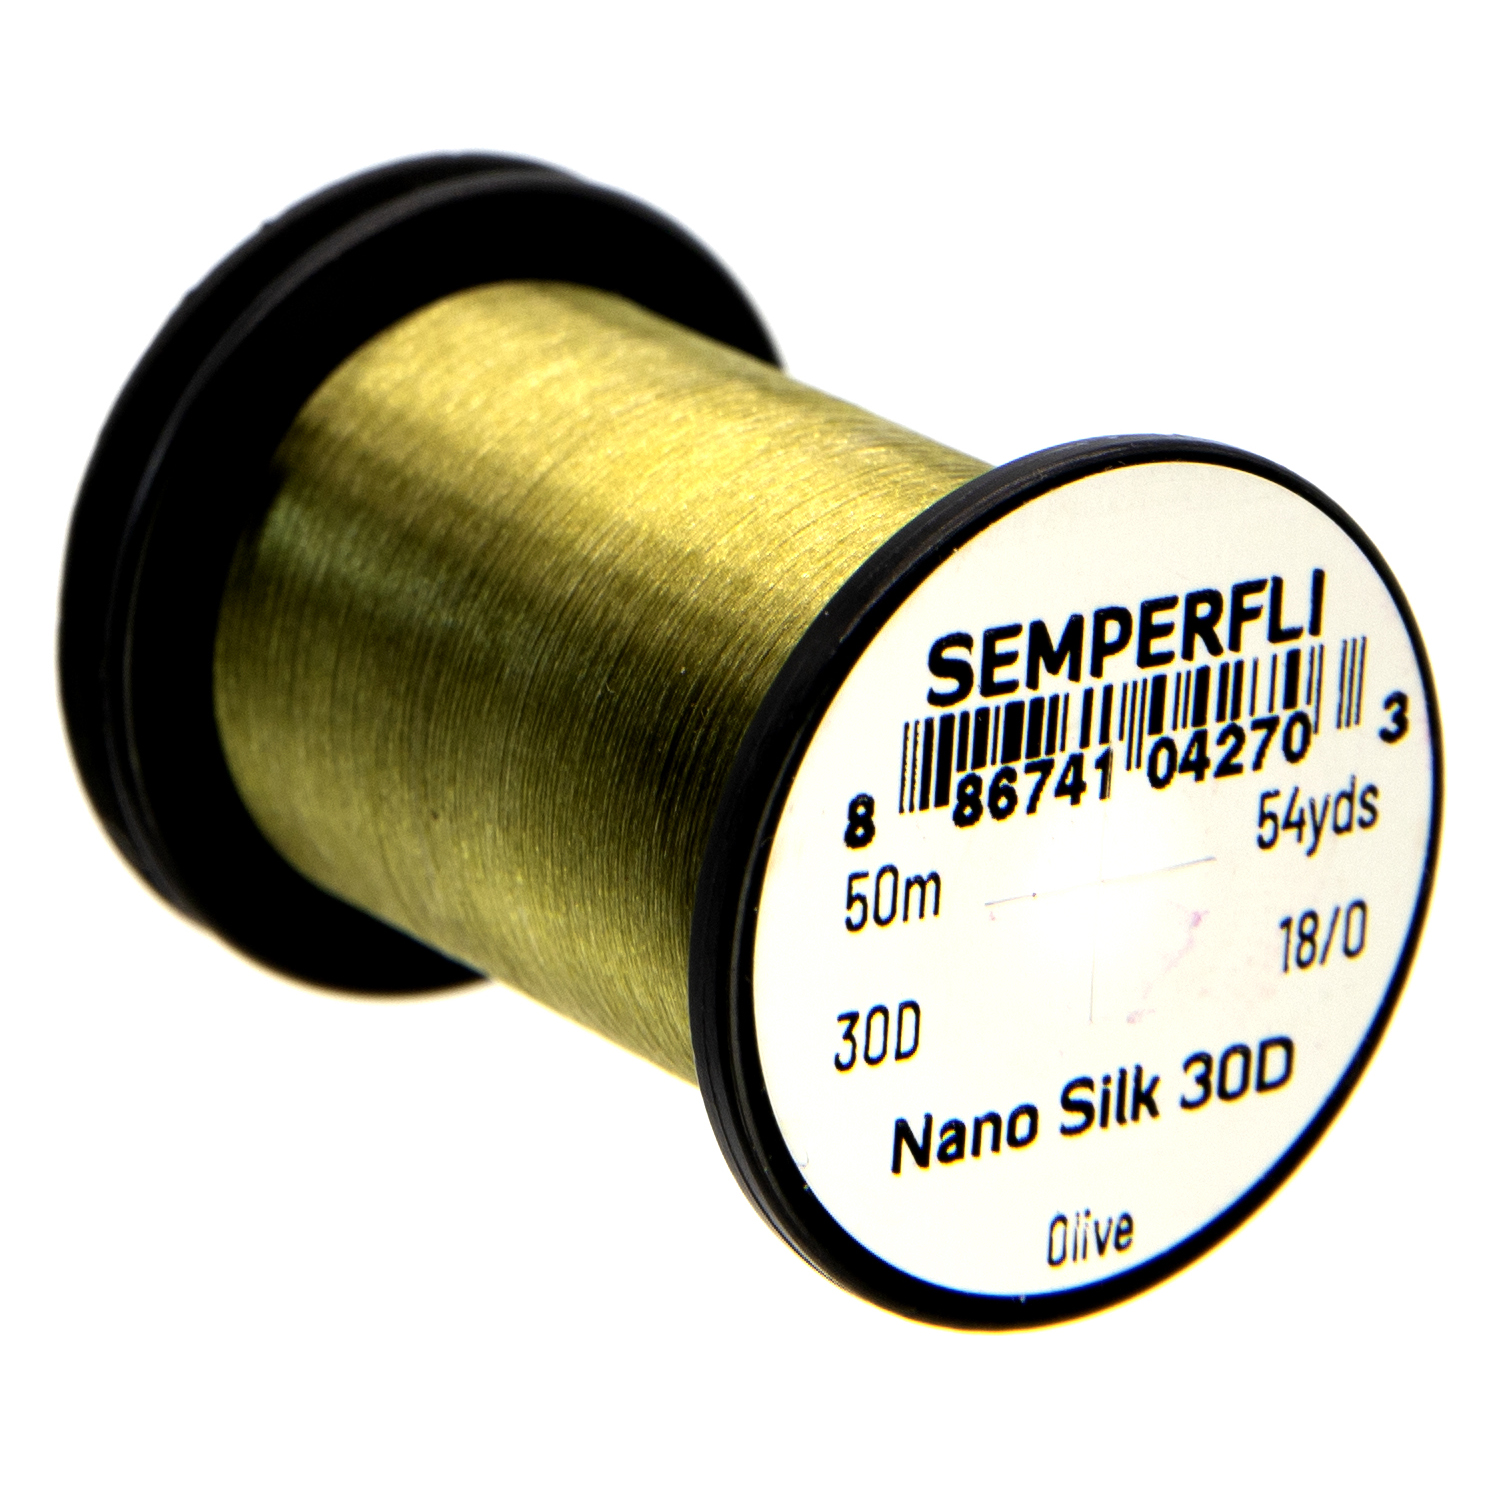 Nano Silk 30D Olive